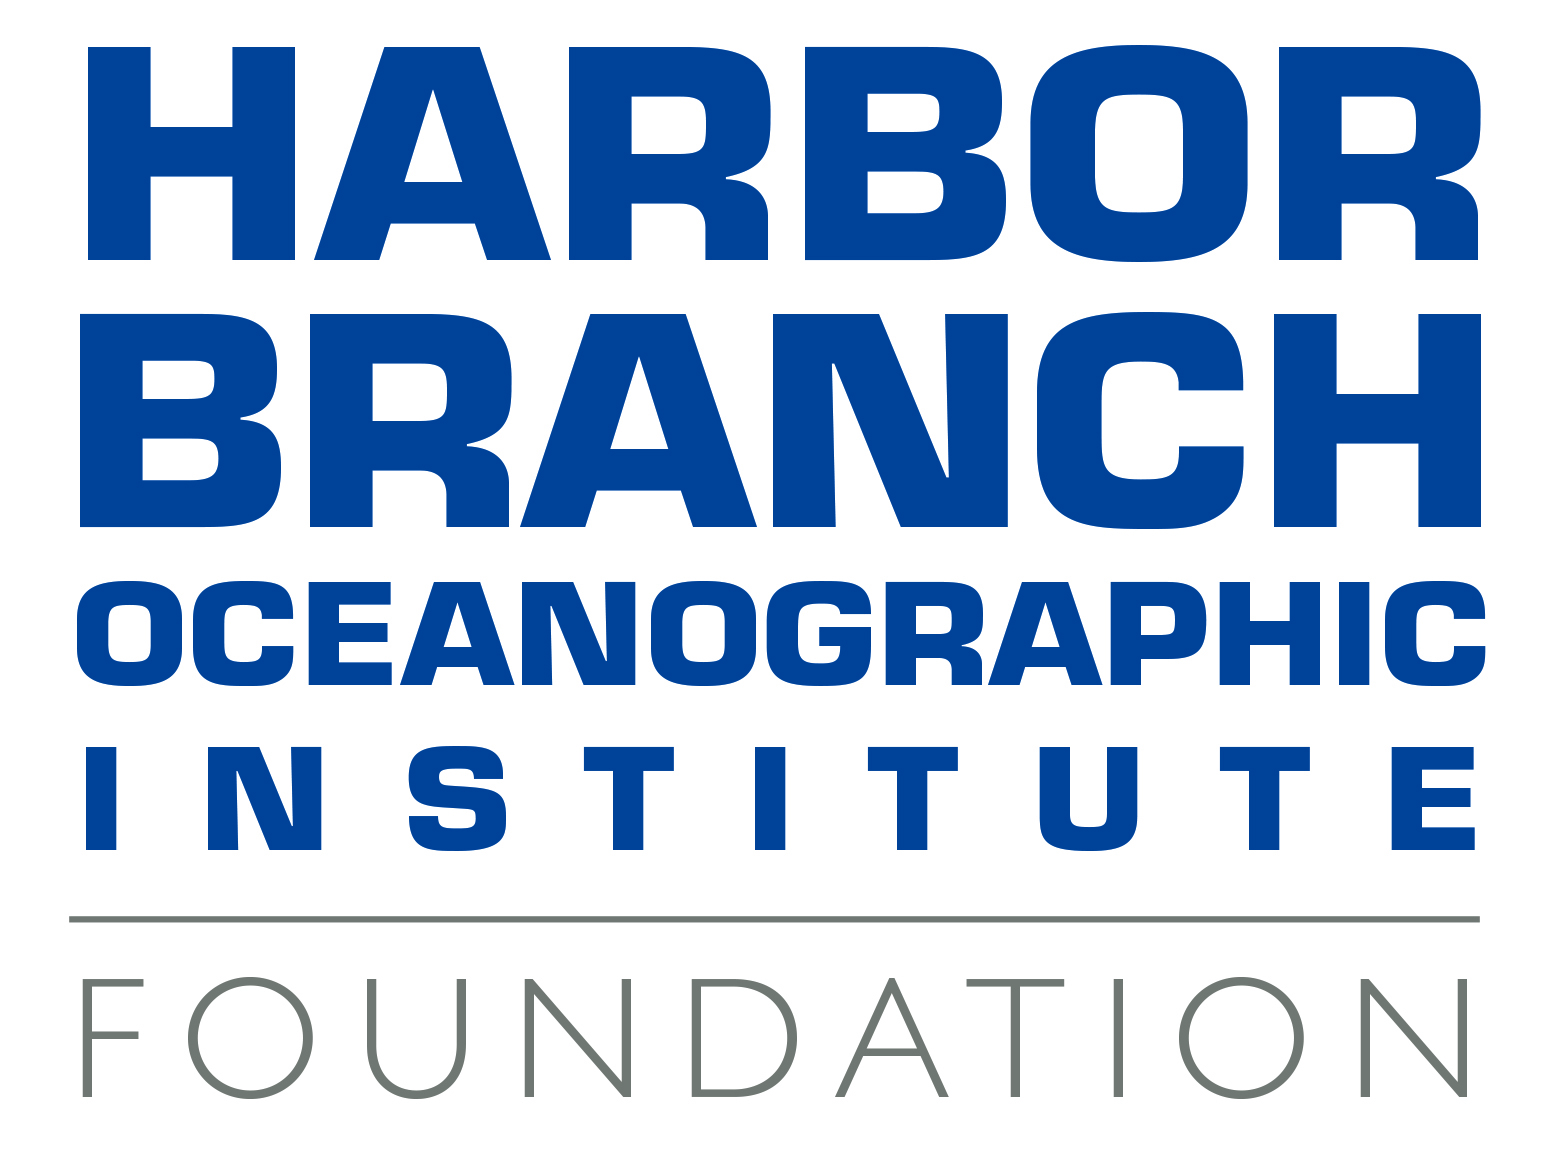 HBOI Foundation logo